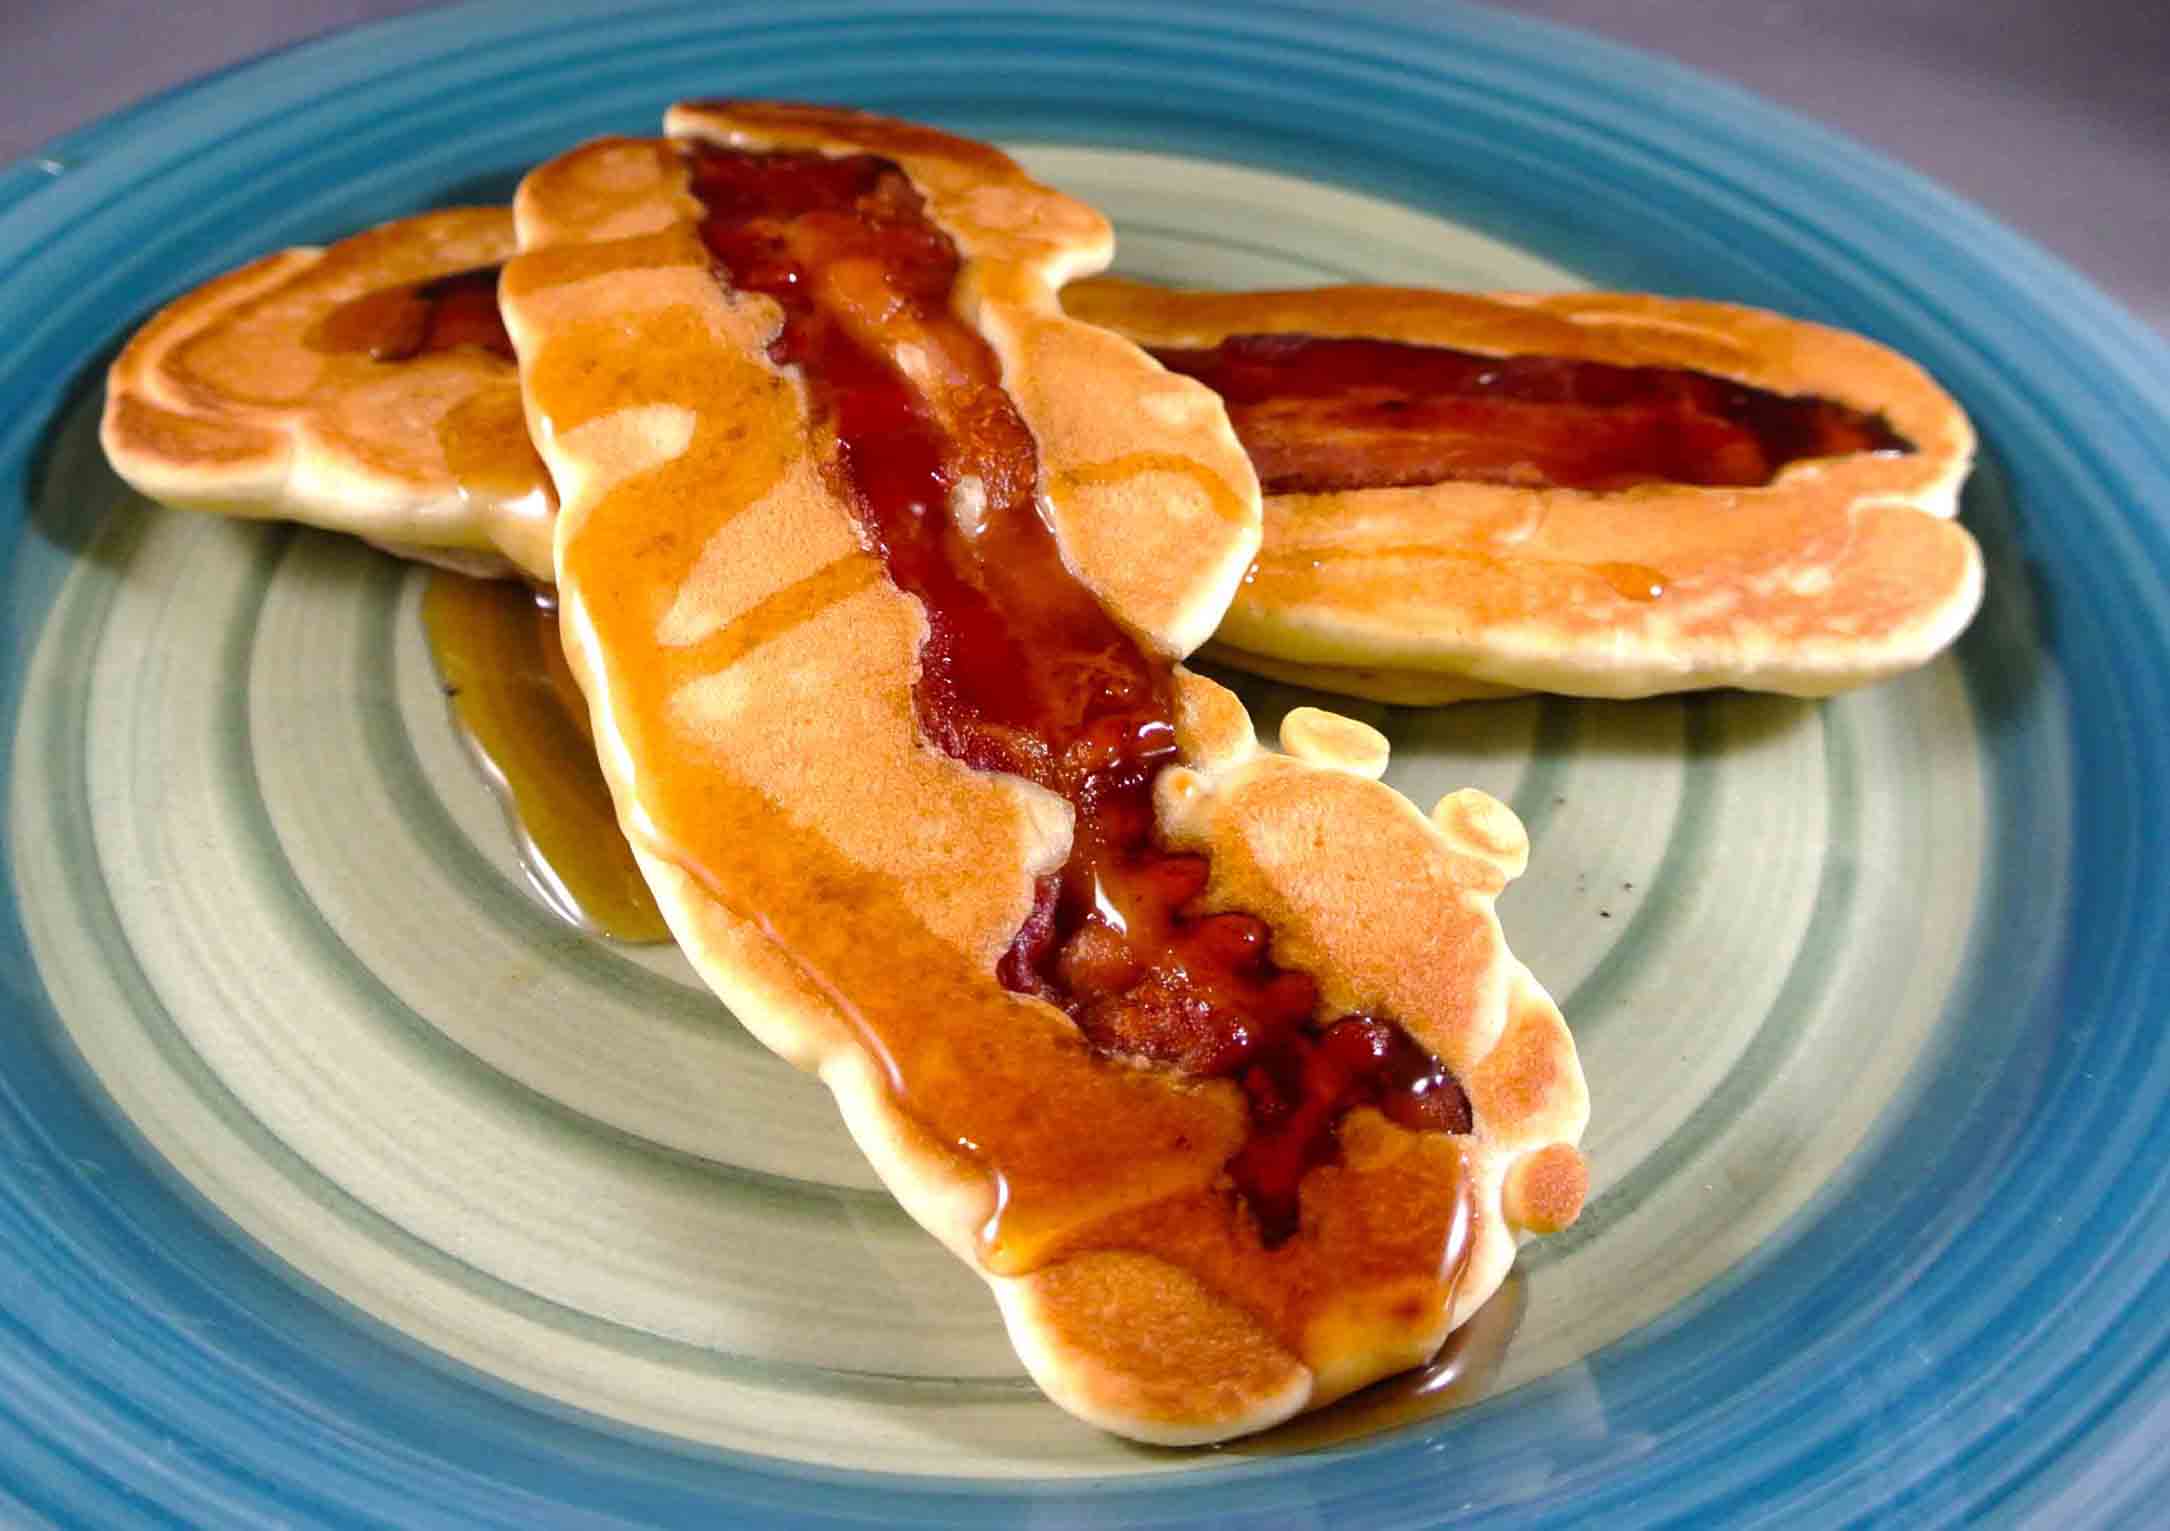 Dip bacon in pancake batter